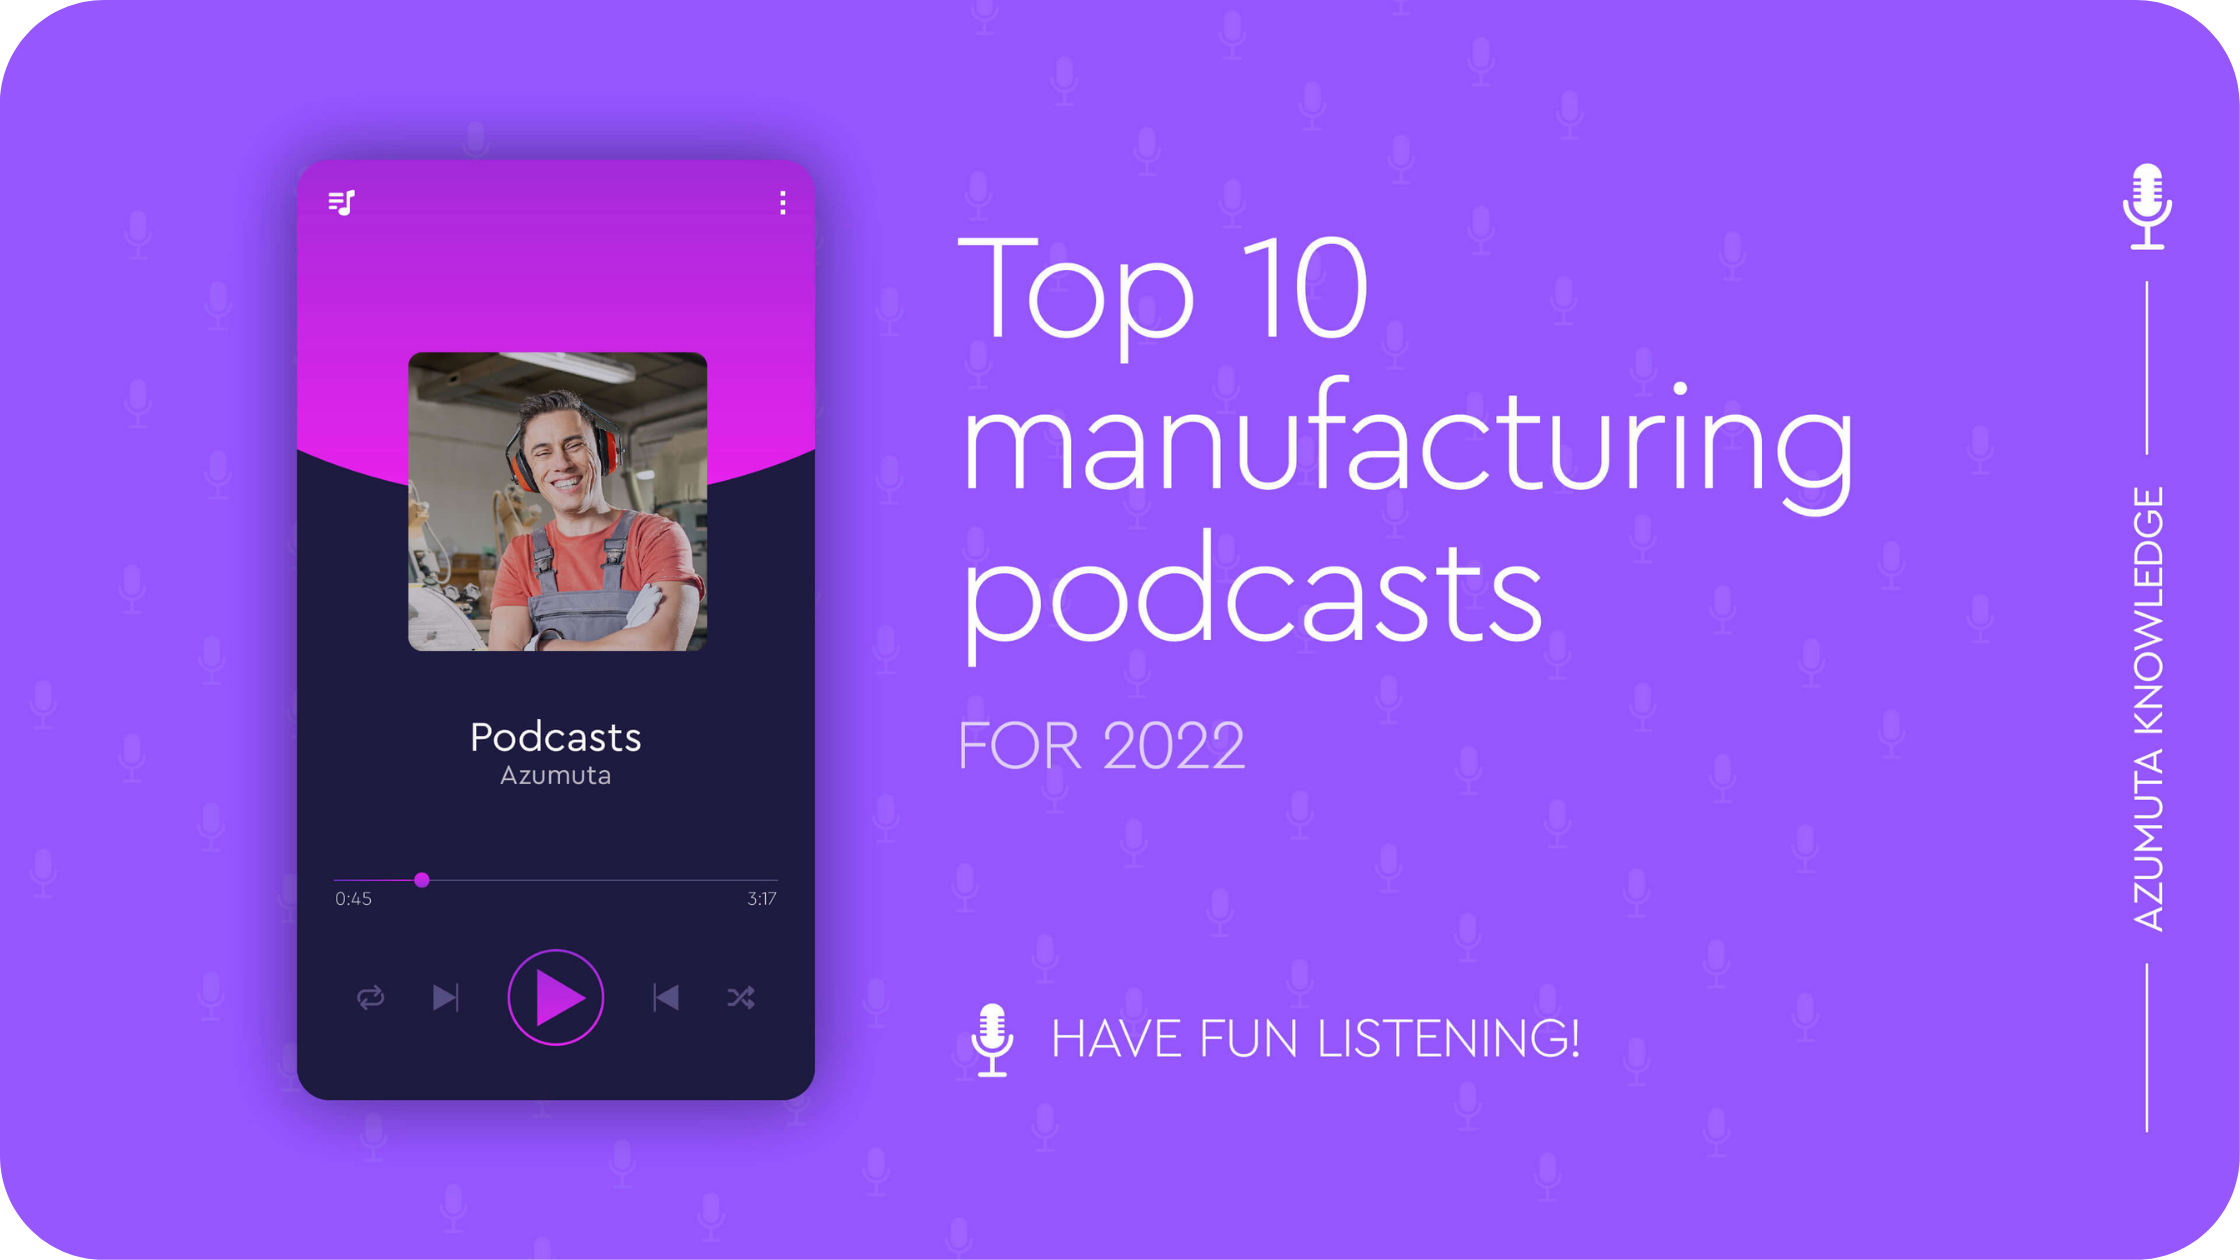 Top 10 Beste Manufacturing Podcasts om te Beluisteren in 2022